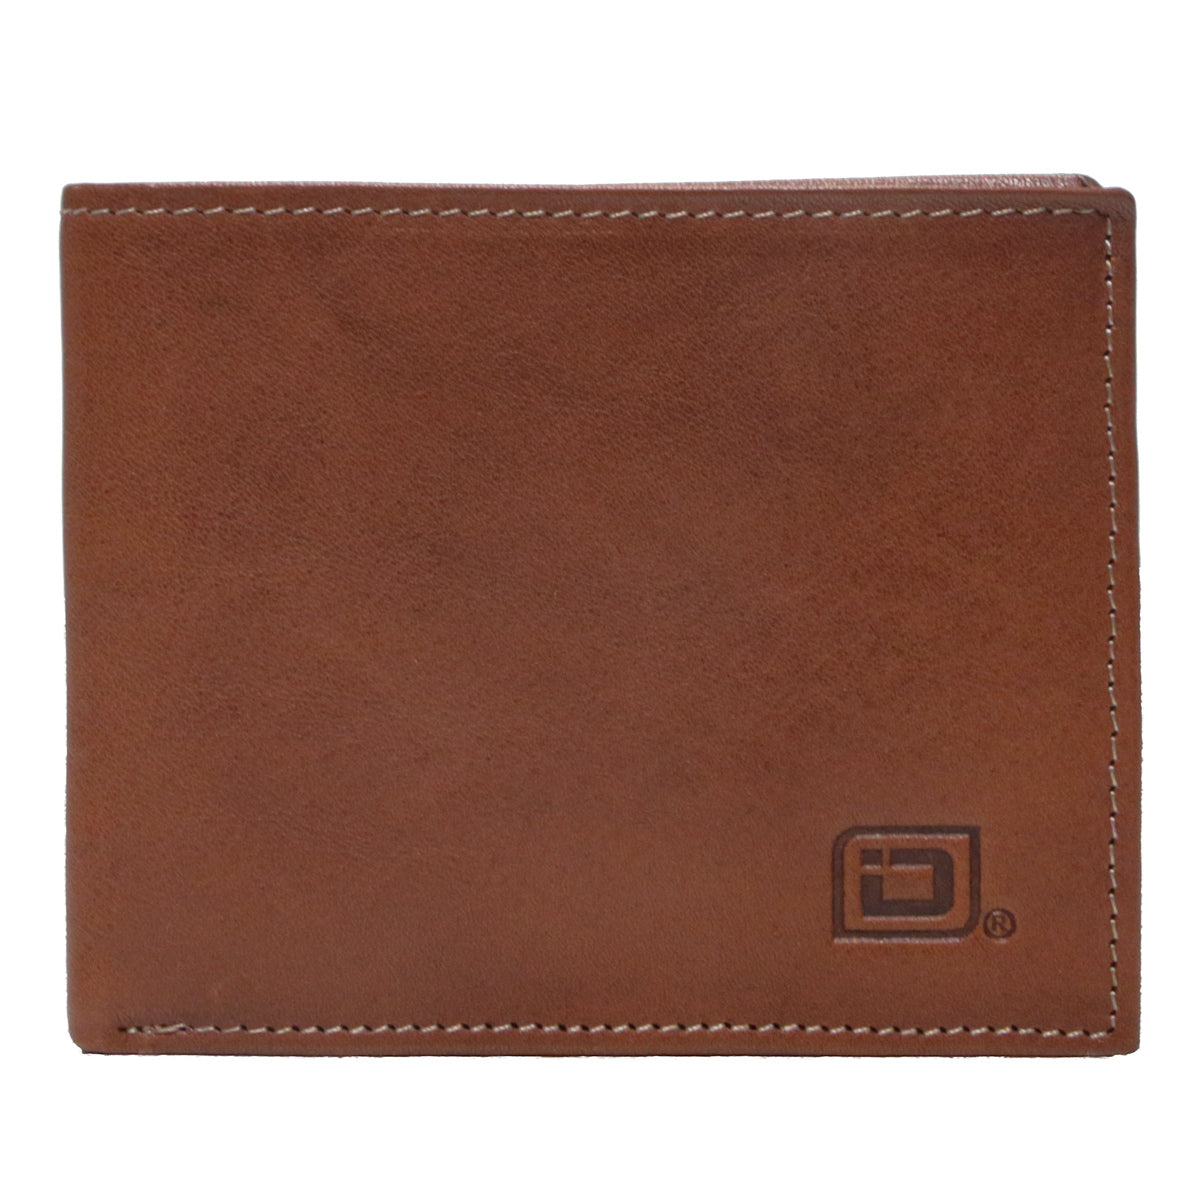 Men's RFID Wallet -  Men's Italian Leather Bifold Wallet